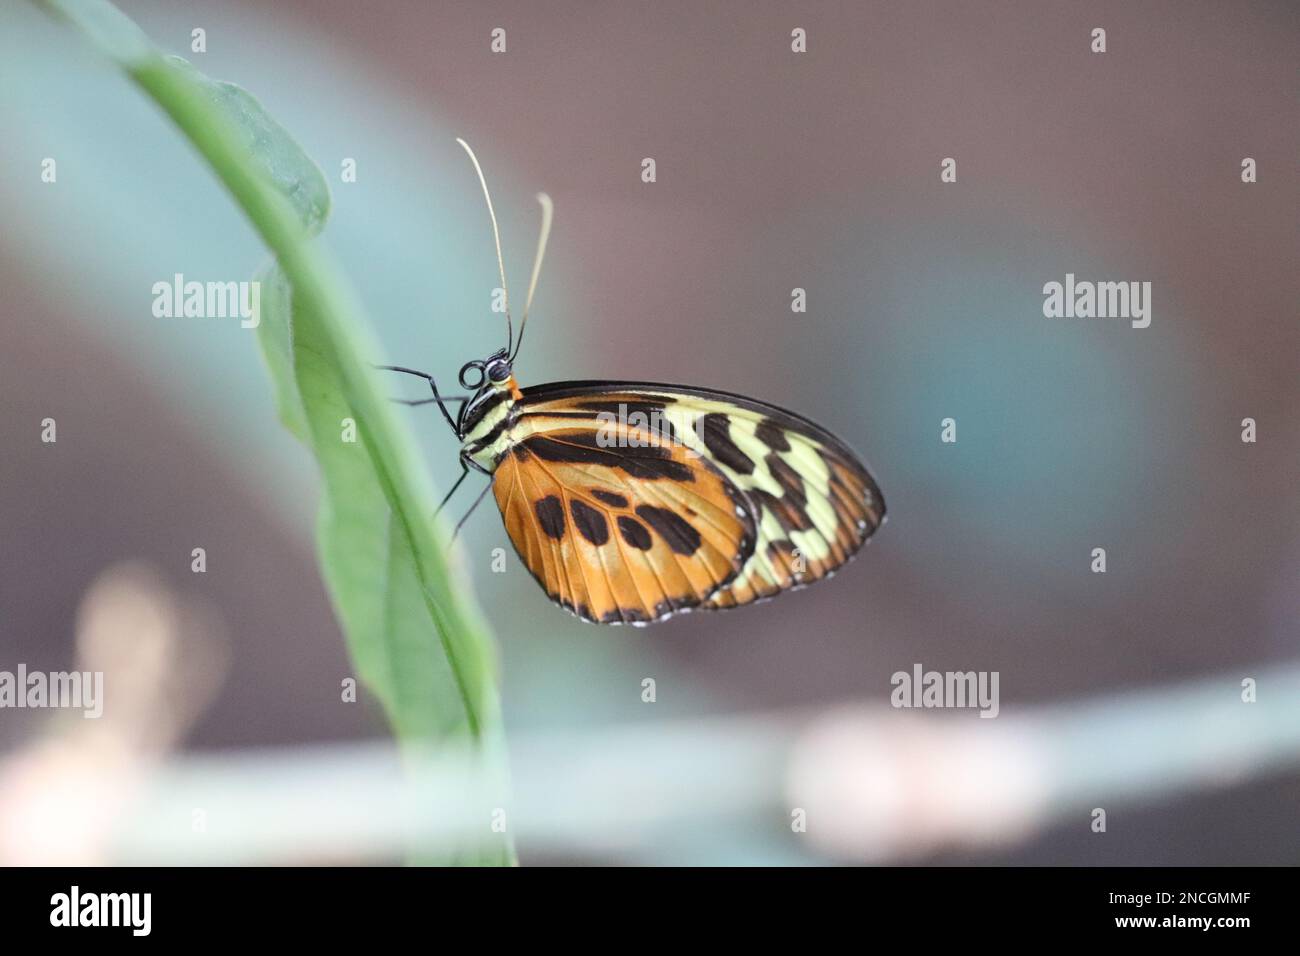 Il primo piano della farfalla poggiata su una lunga e sottile foglia mostra i dettagli dei proboschi, delle antenne, delle gambe e delle marcature delle ali. L'immagine lascia spazio per aggiungere testo. Foto Stock